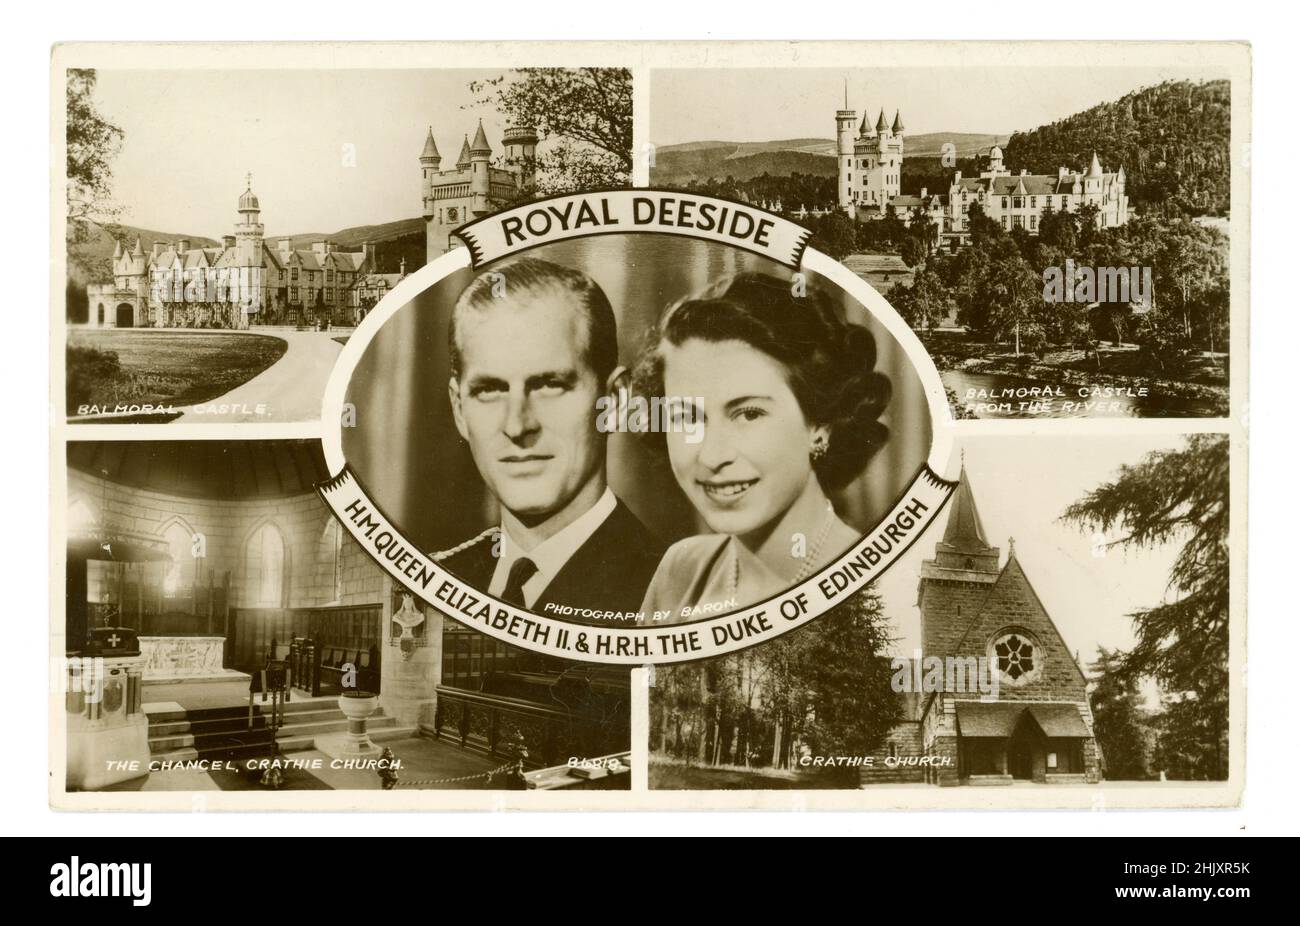 Original postal de los años 1950 con foto montage de la reina Elizabeth 11 y el duque de la HRH de Edimburgo, el Deeside real, además de la residencia real Balmoral Castle, Crathie Church (lugar de culto de la familia real británica cuando están en residencia en el cercano Castillo Balmoral.) Escocia, Reino Unido Circa 1953 Foto de stock